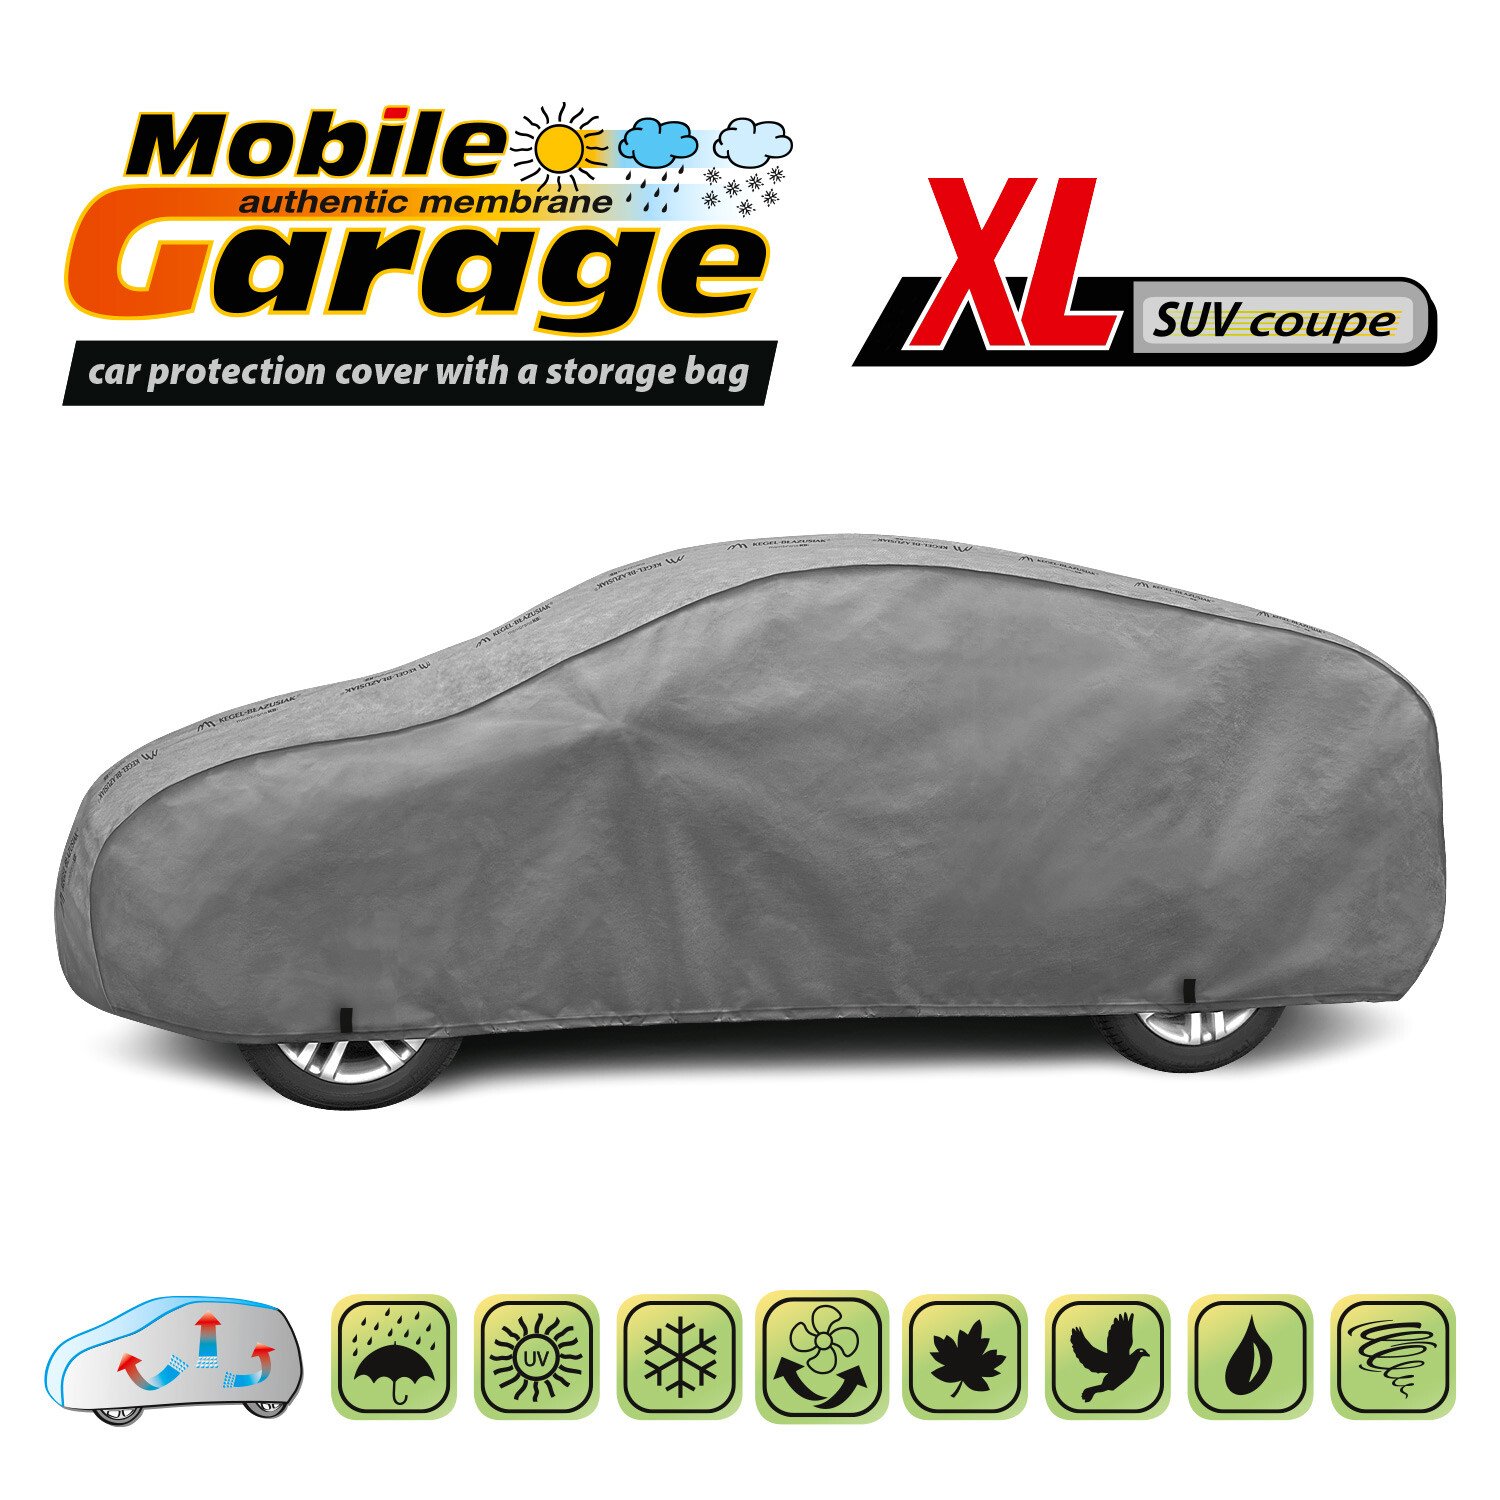 Mobile Garage komplet autótakaró ponyva - XL SUV - Coupe thumb